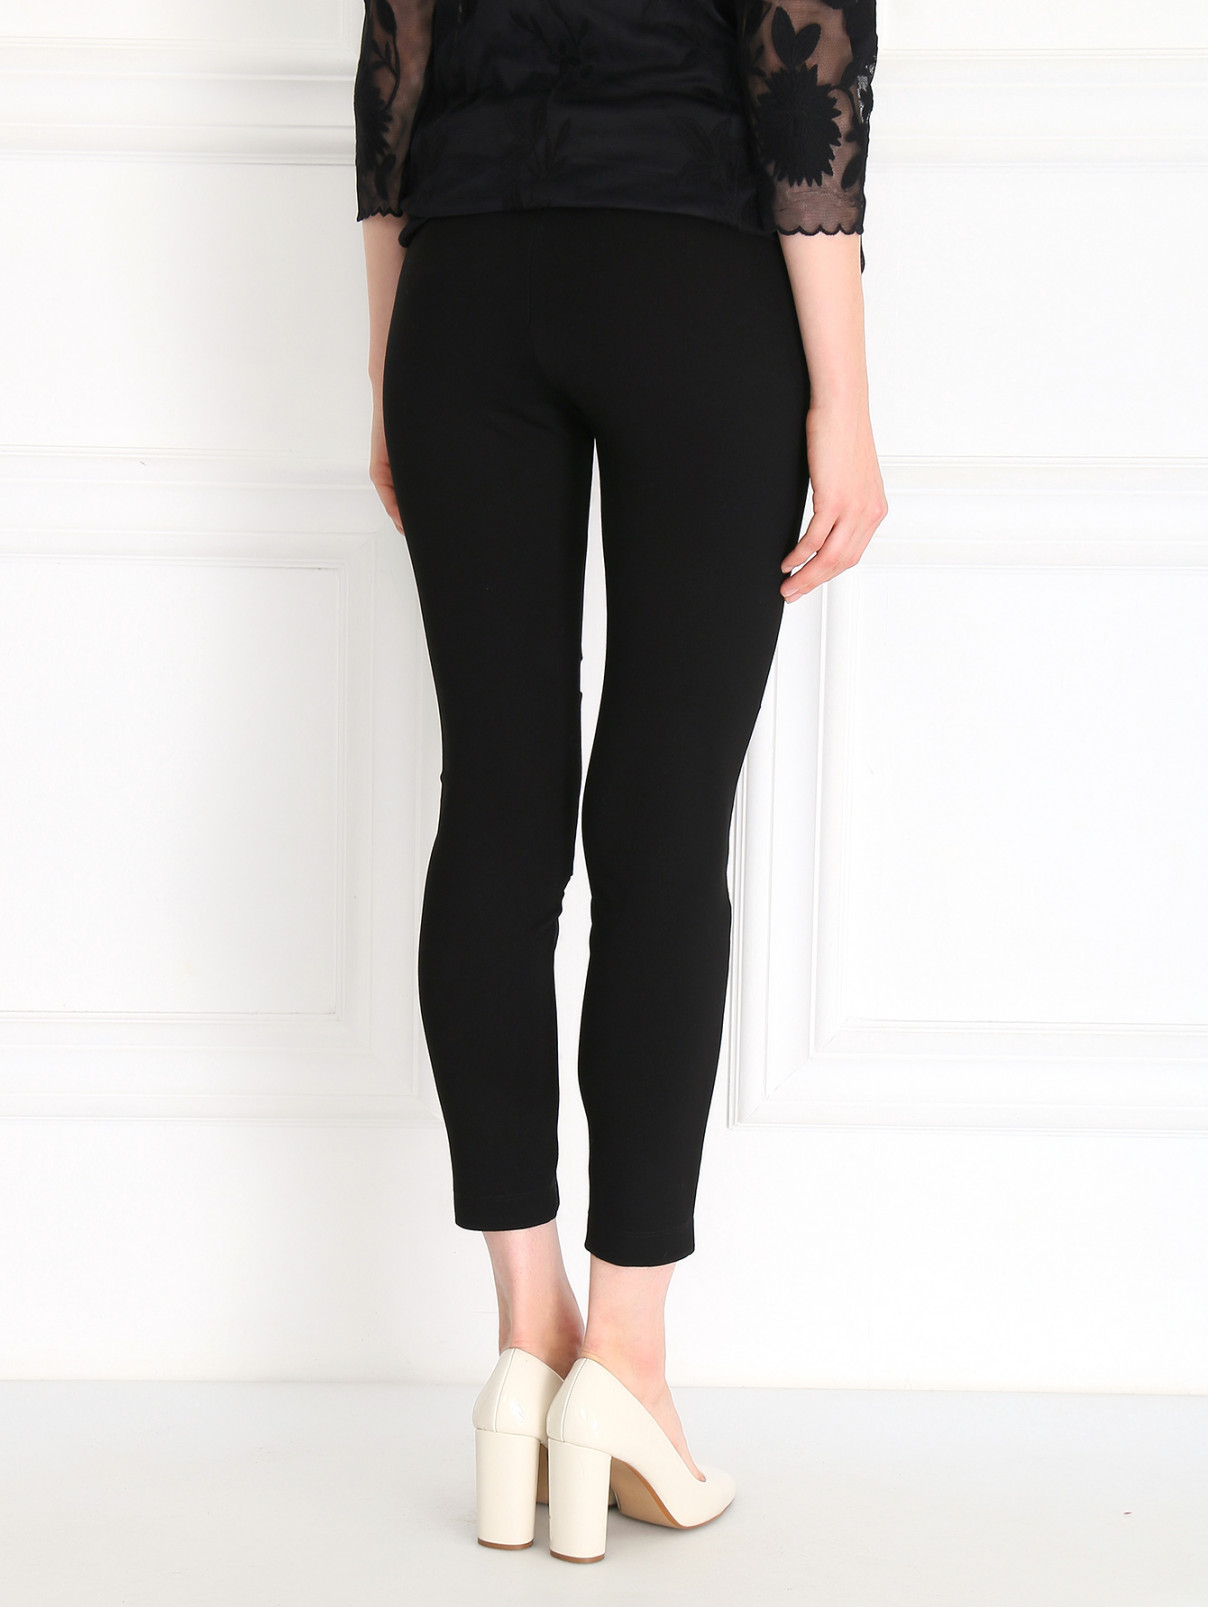 Трикотажные брюки с прозрачными вставками Kira Plastinina  –  Модель Верх-Низ1  – Цвет:  Черный